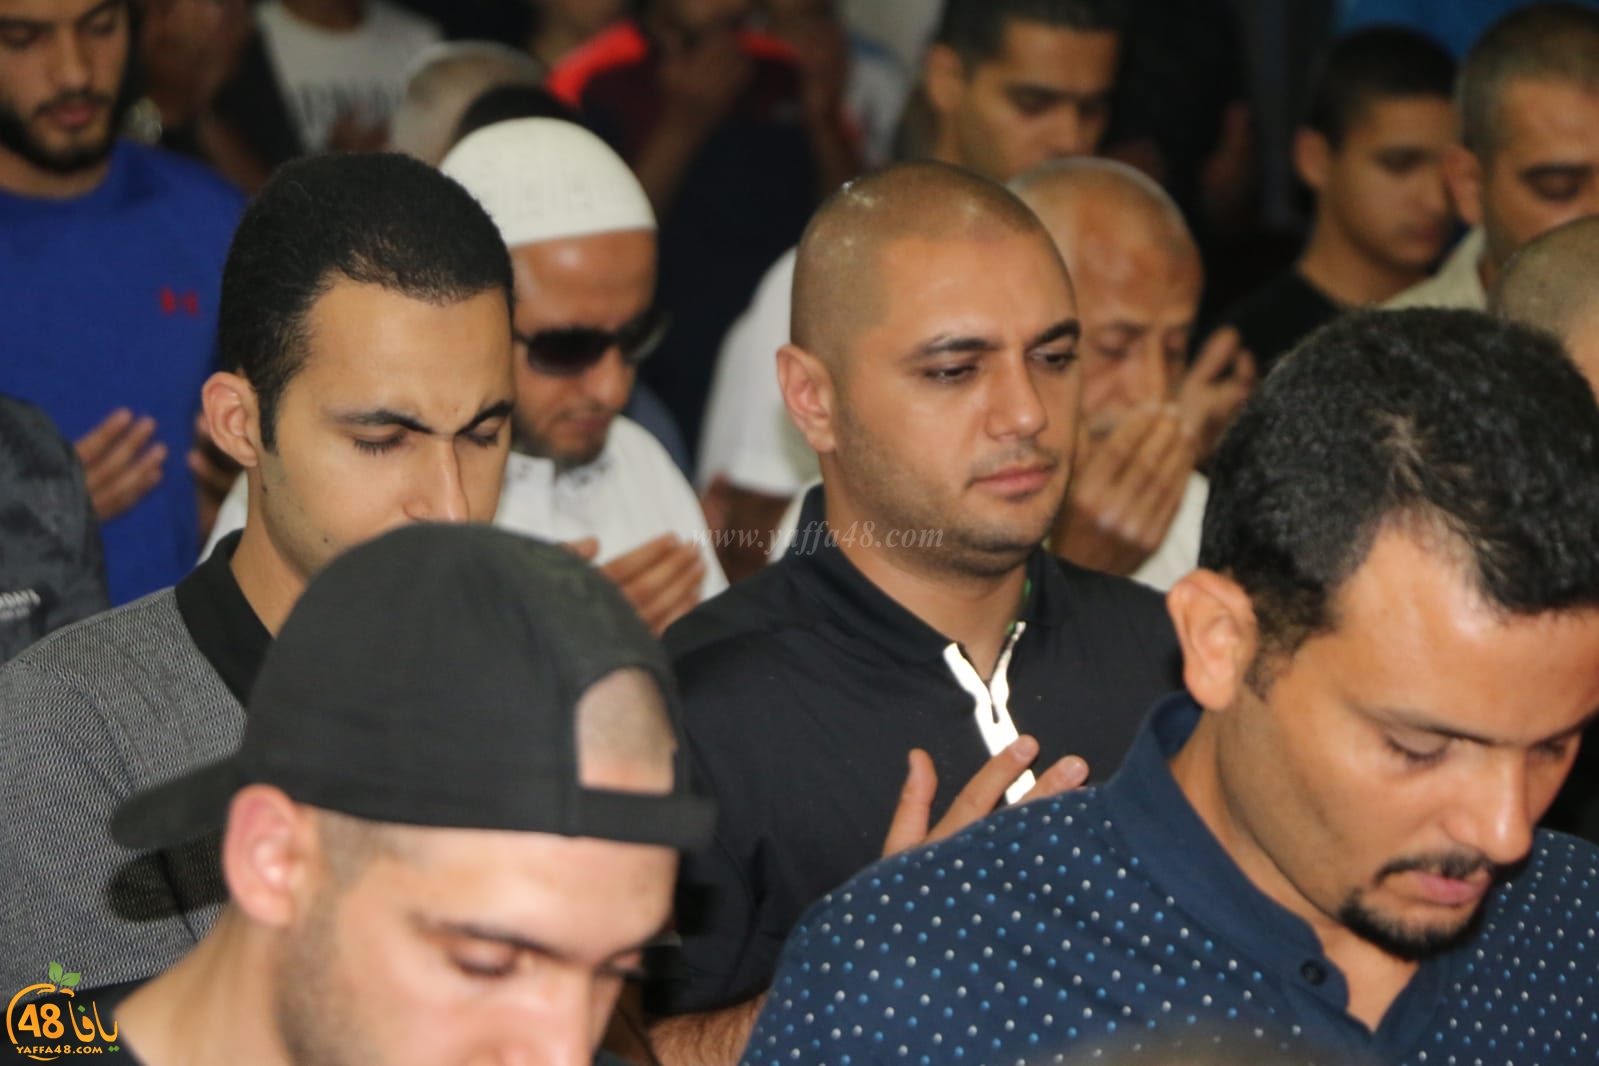  بالصور: مساجد يافا تتزين بالمصلين احياءً لليلة القدر 